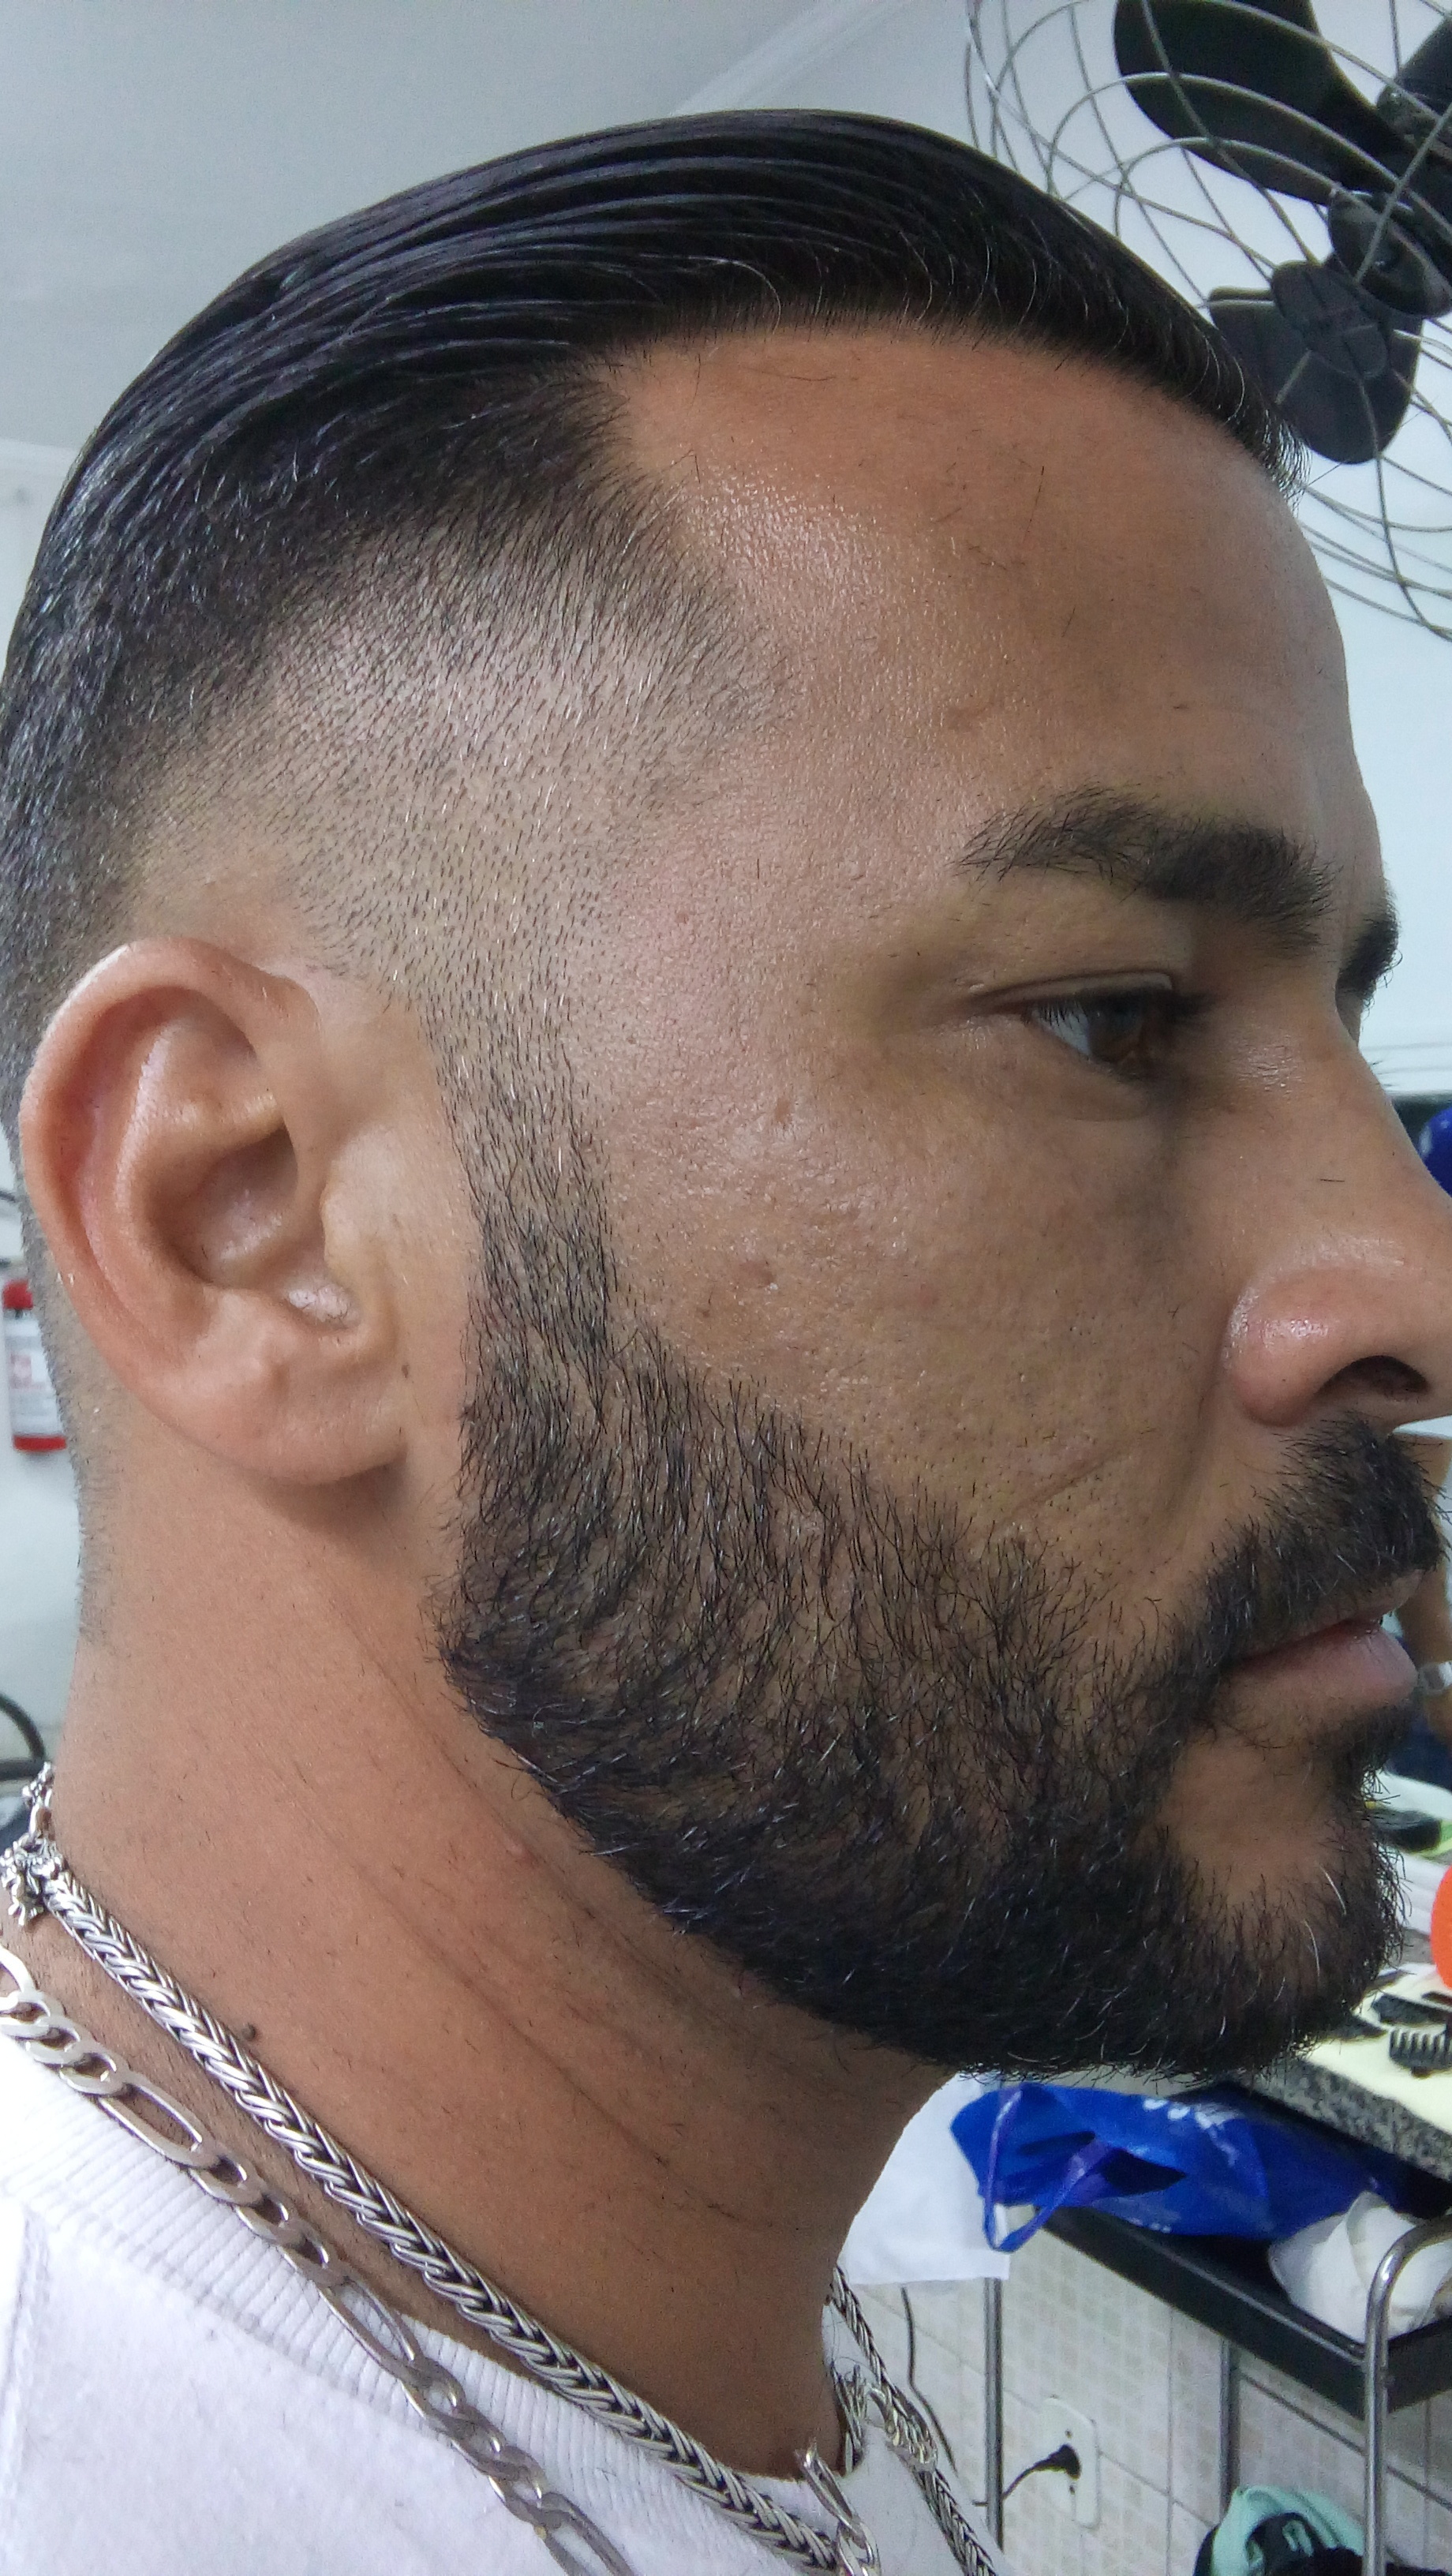 Degradê Social (Imagem da lateral)
Barba aparada, desenhada e com um leve disfarçado na costeleta cabelo barbeiro(a)